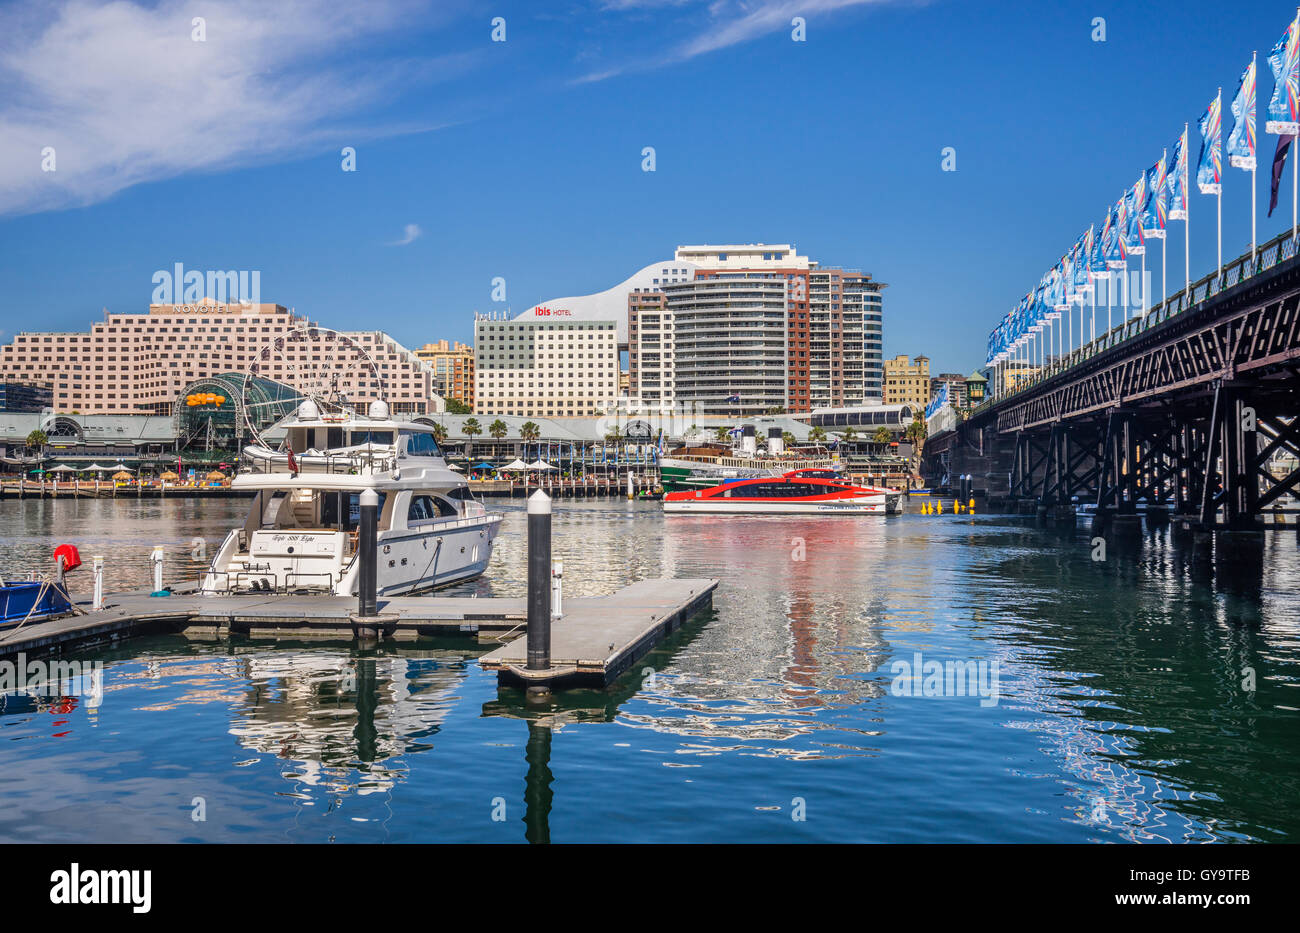 Australia, New South Wales, Sydney, Darling Harbour, vista del Harborside complejo y Pyrmont Bridge Foto de stock